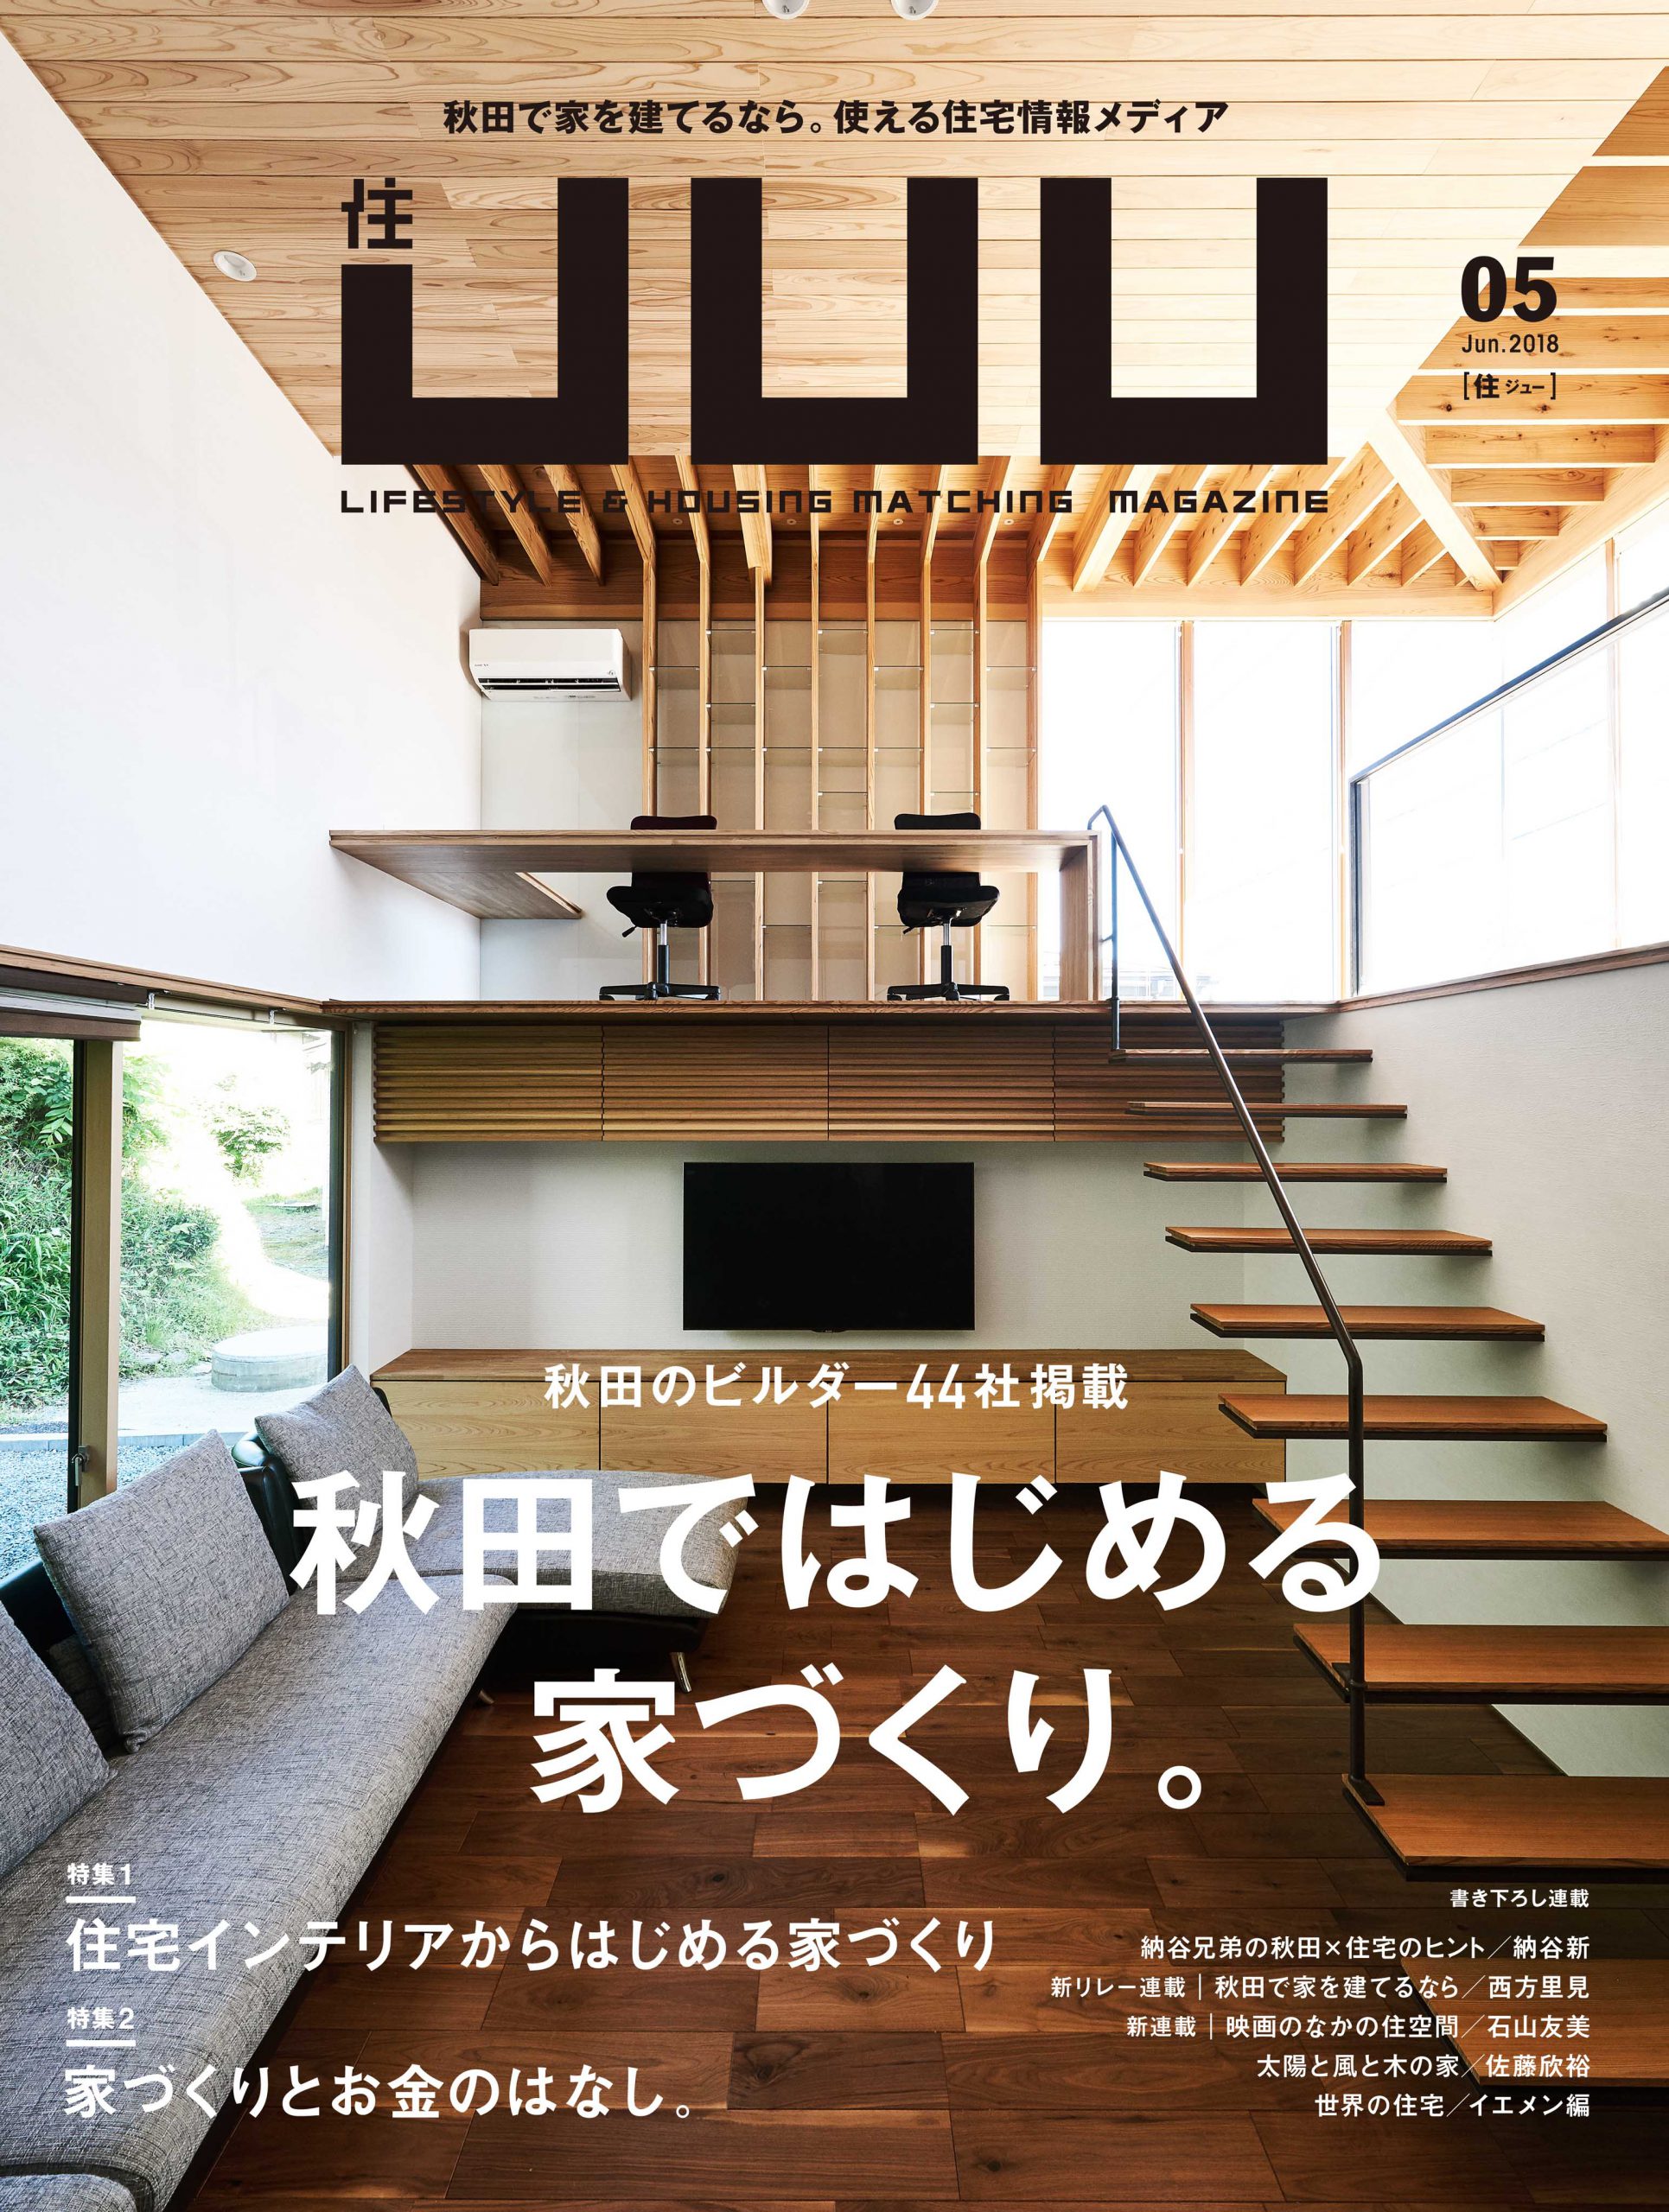 JUU 2018年05号に「花ブロックのデッキがある家」が掲載されました。